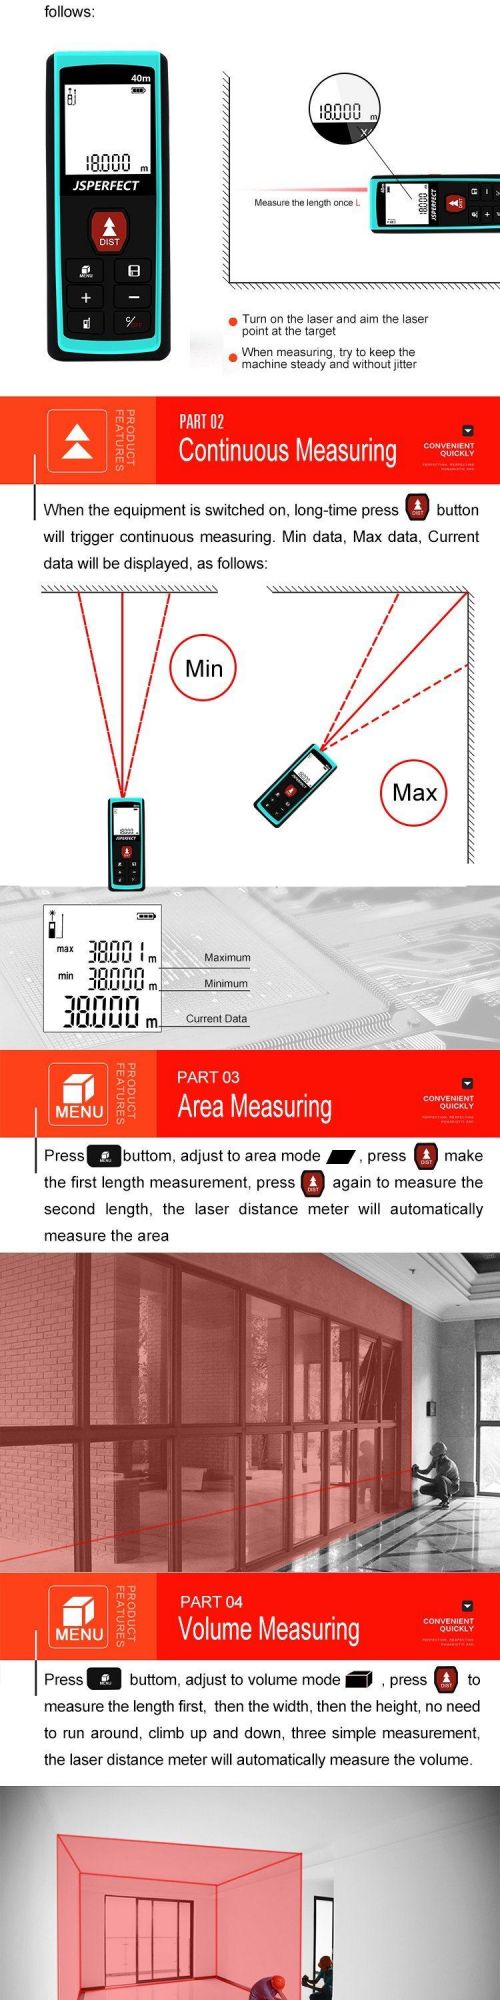 40m High Personalised Laser Measure Distance Meter